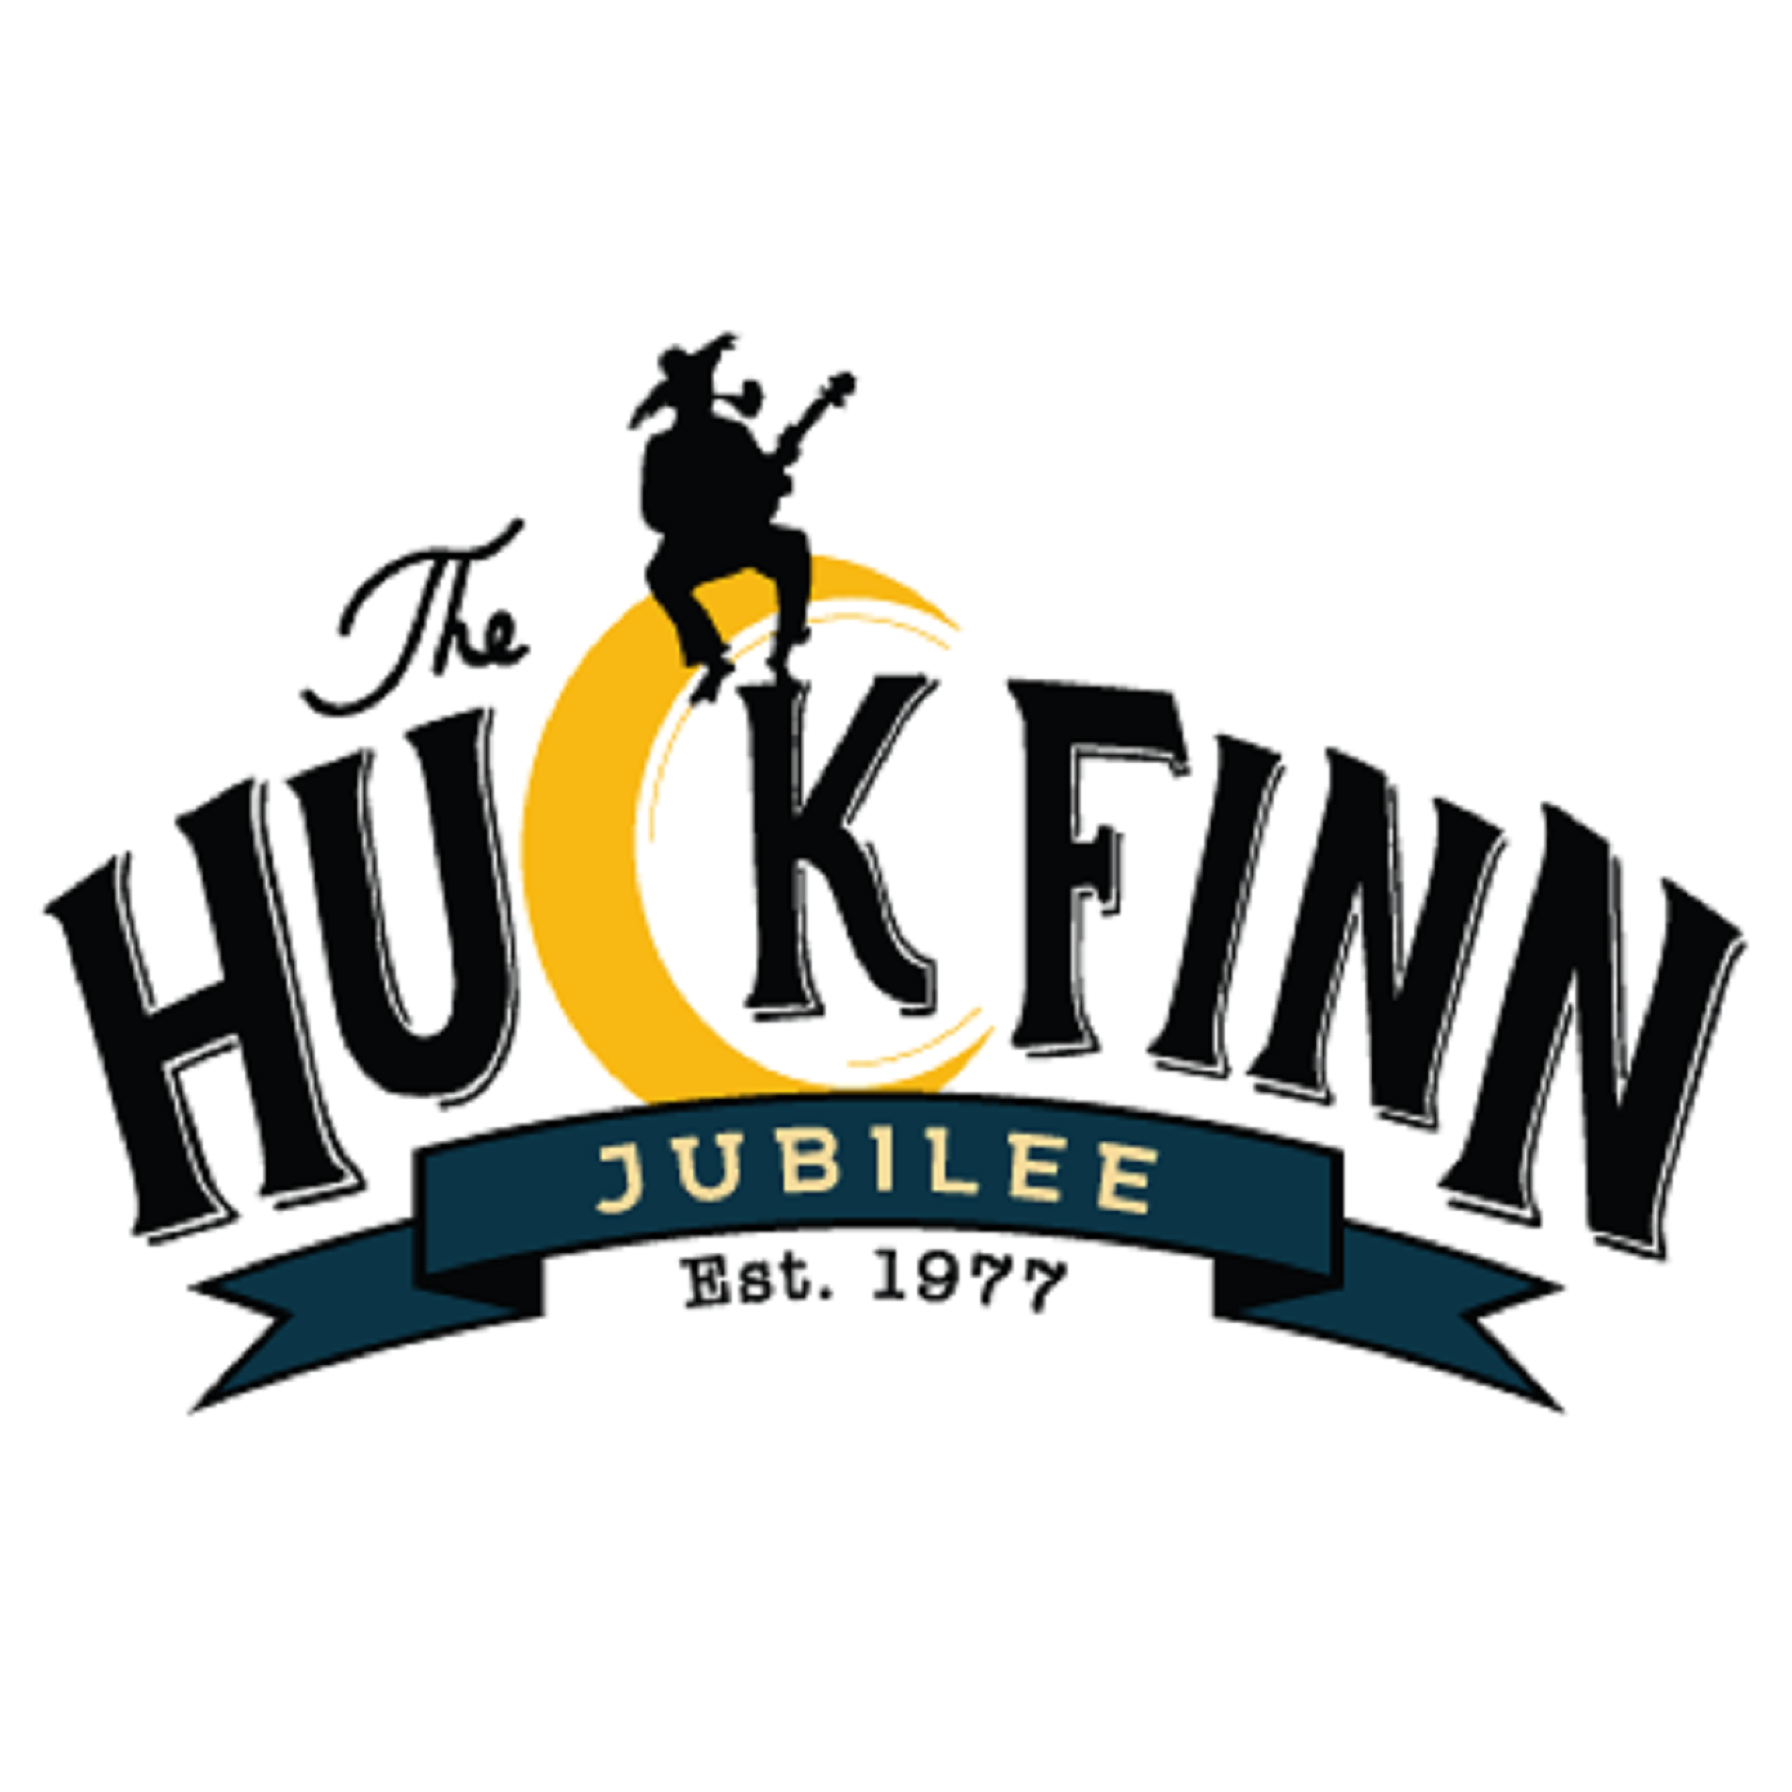 Huck Finn Jubilee Music Festival is back in 2018